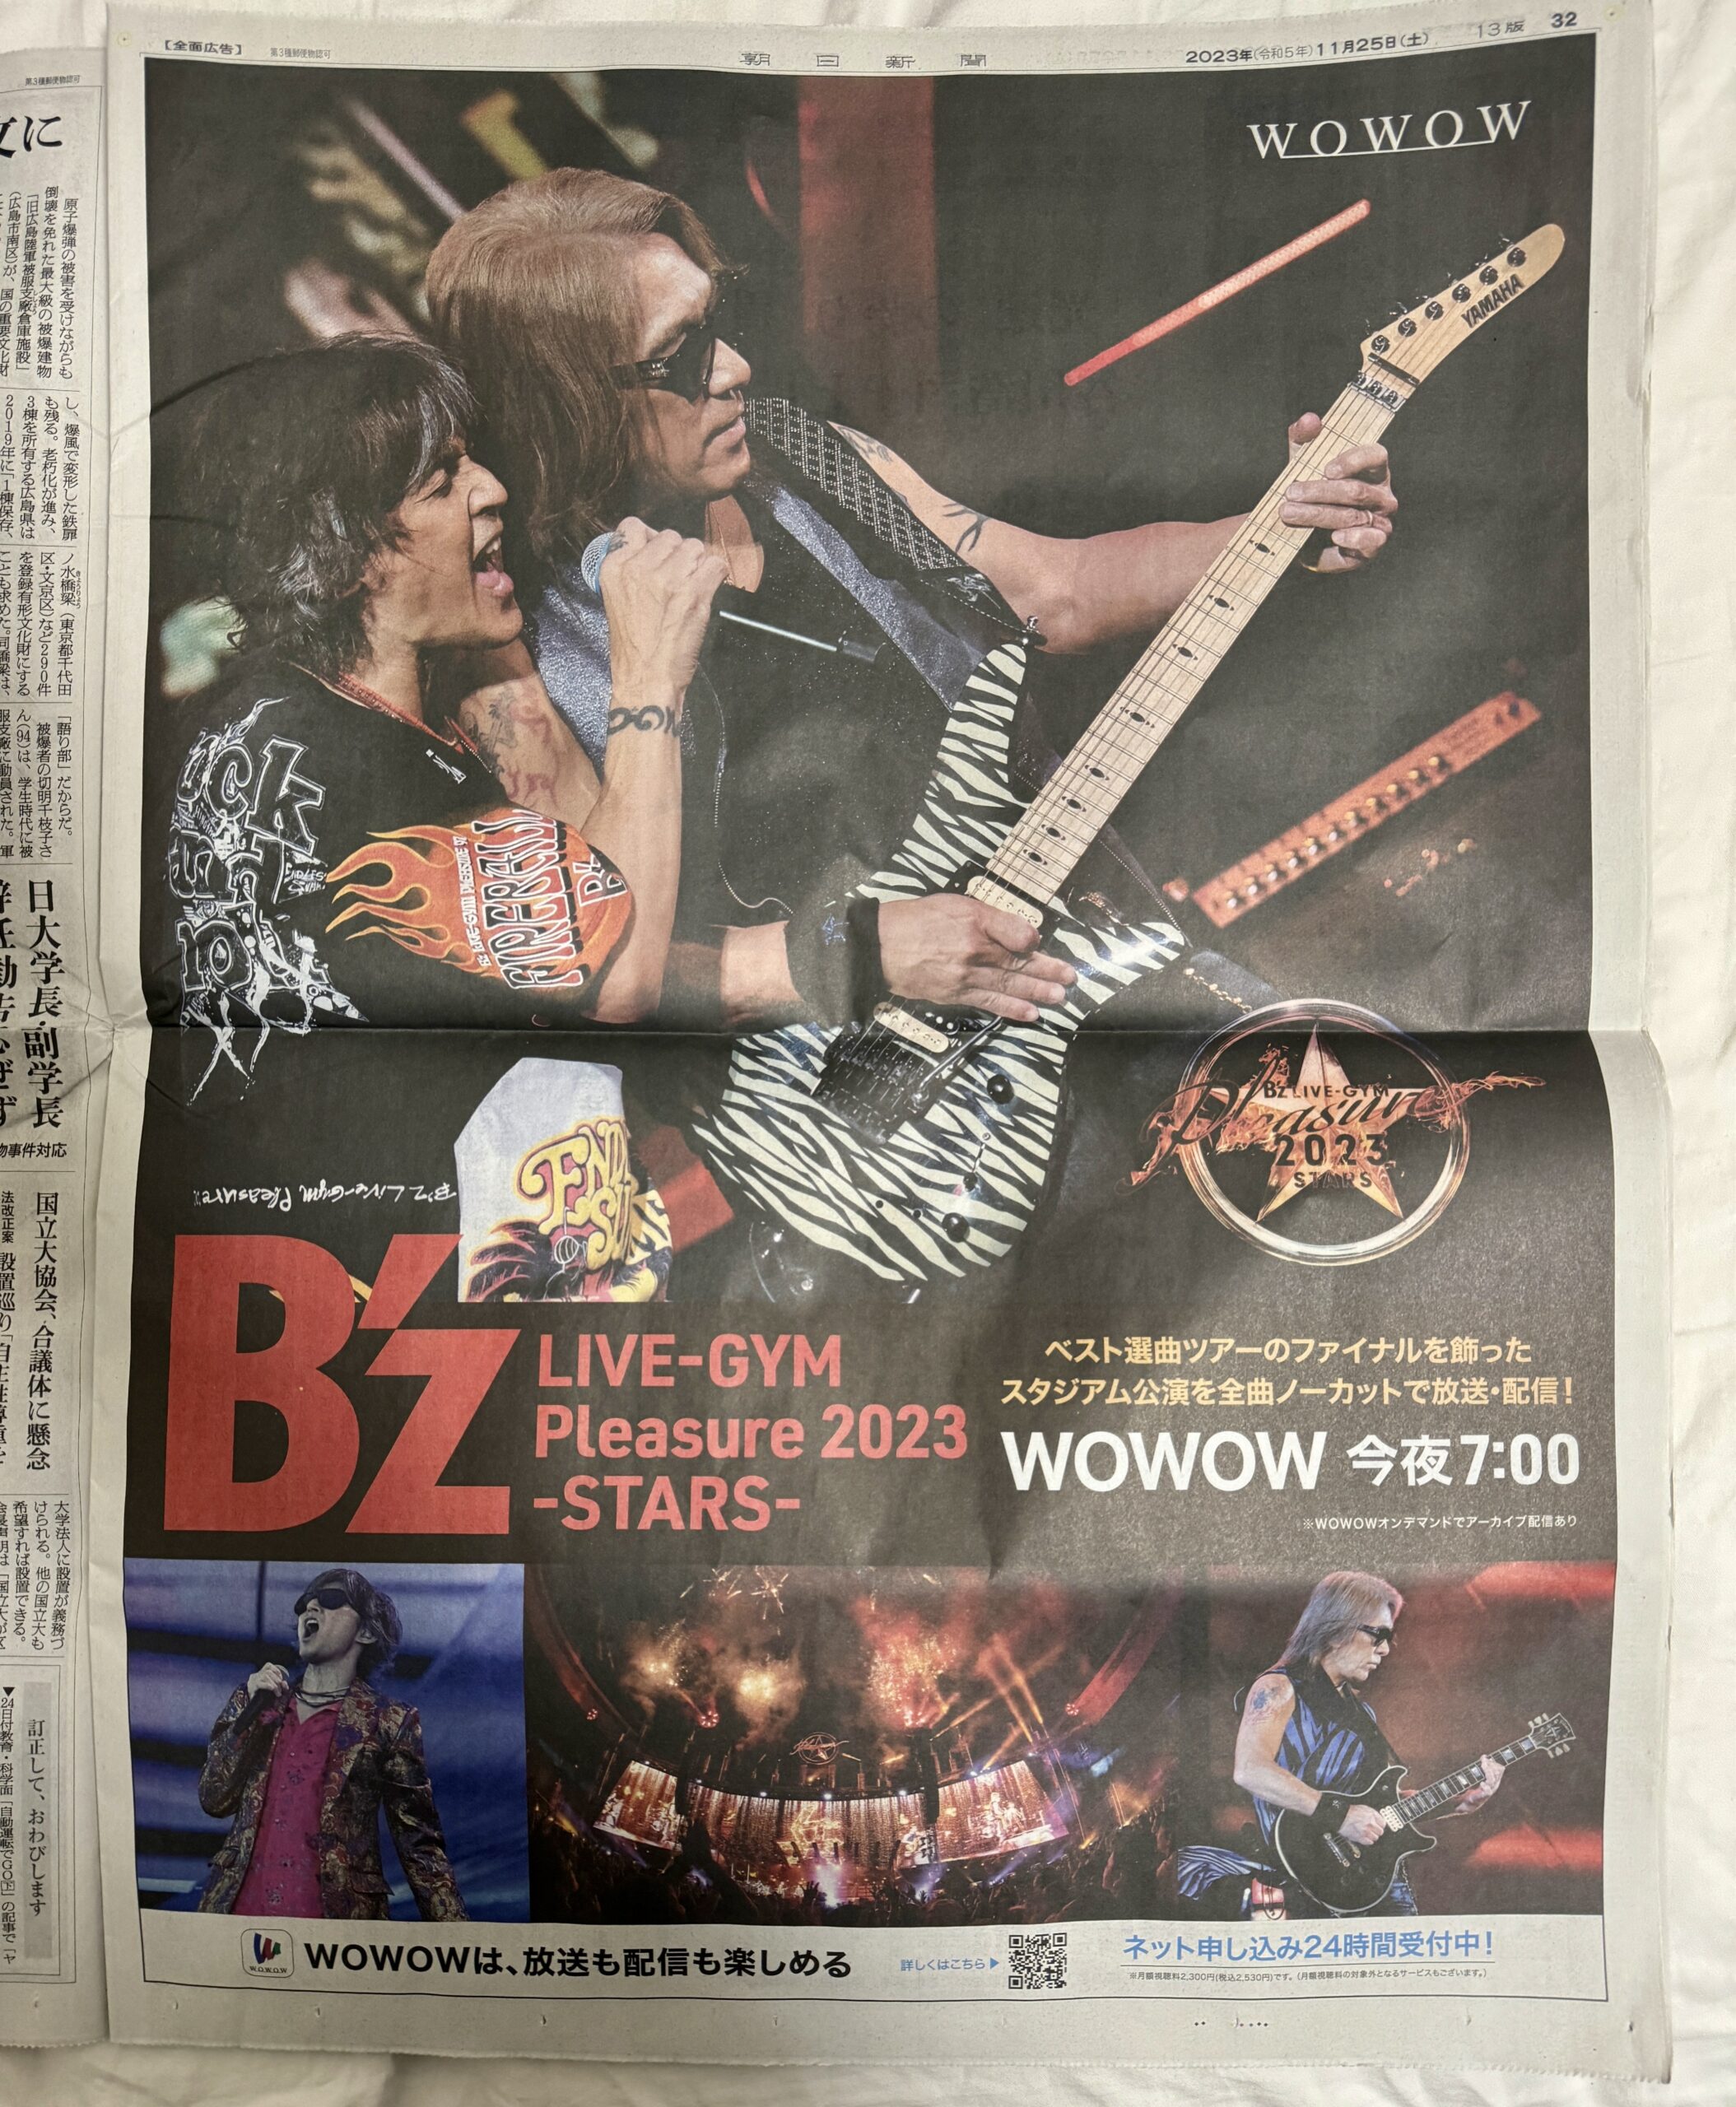 WOWOW『B'z LIVE-GYM Pleasure 2023 -STARS-』の朝日新聞全面広告